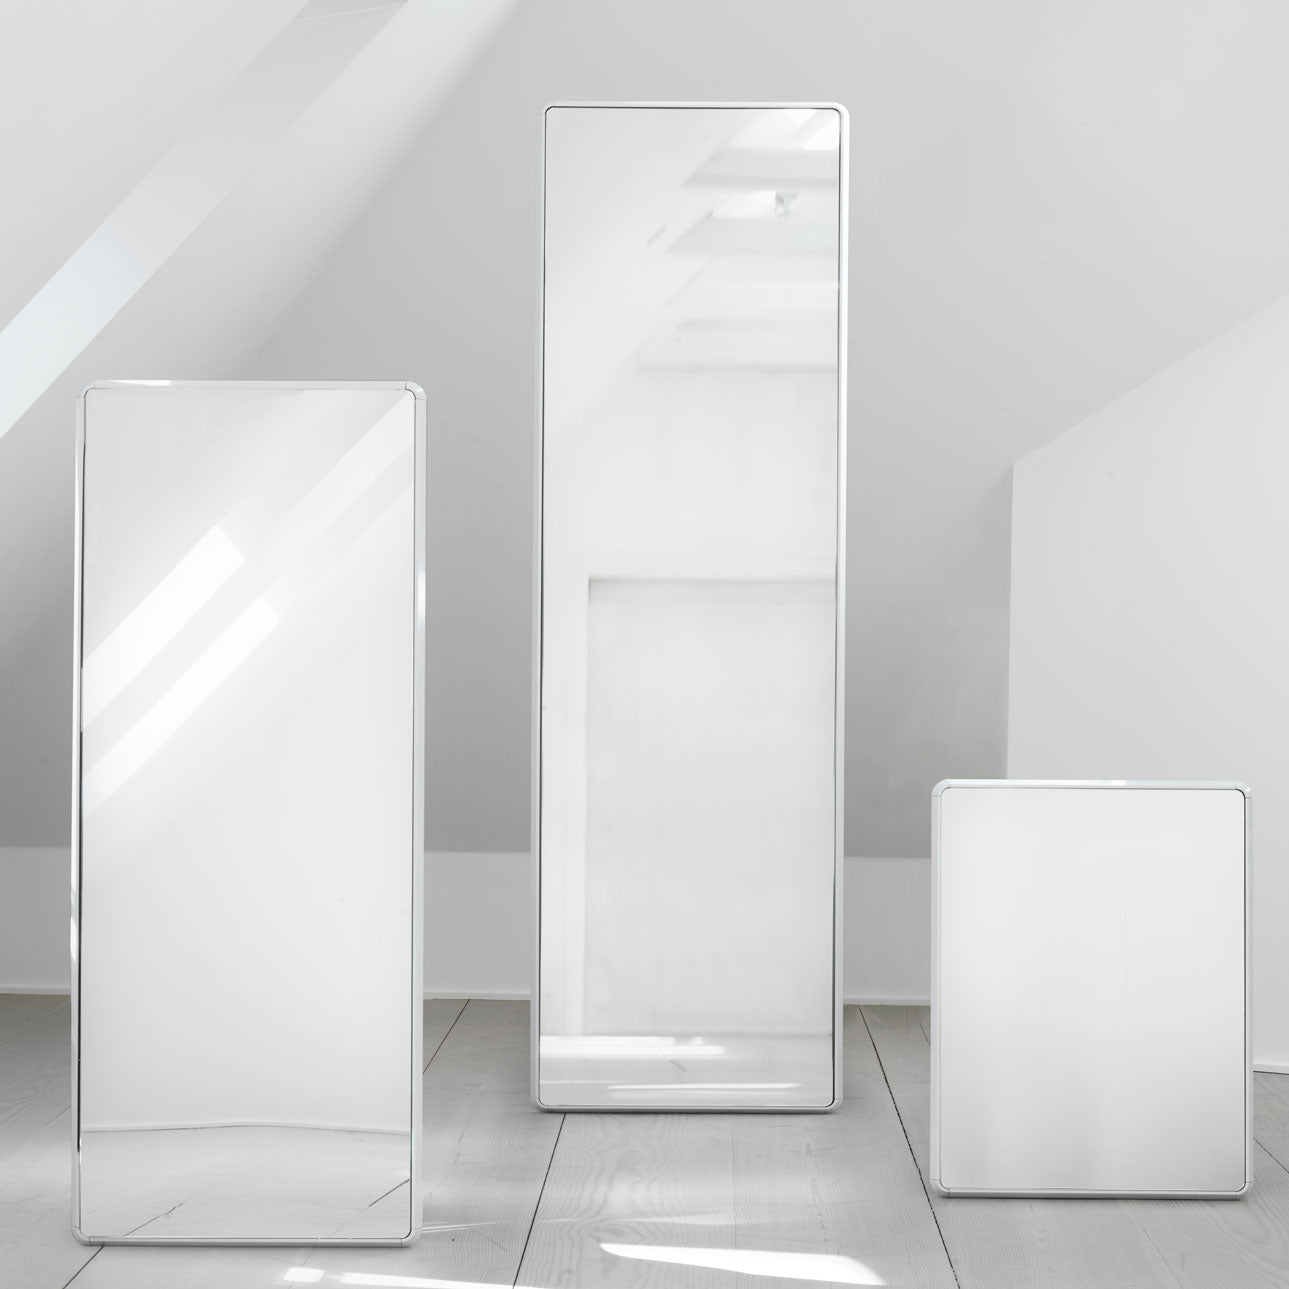 Vipp - Morten Bo Jensen - Wall Mirror Small Vipp911 White